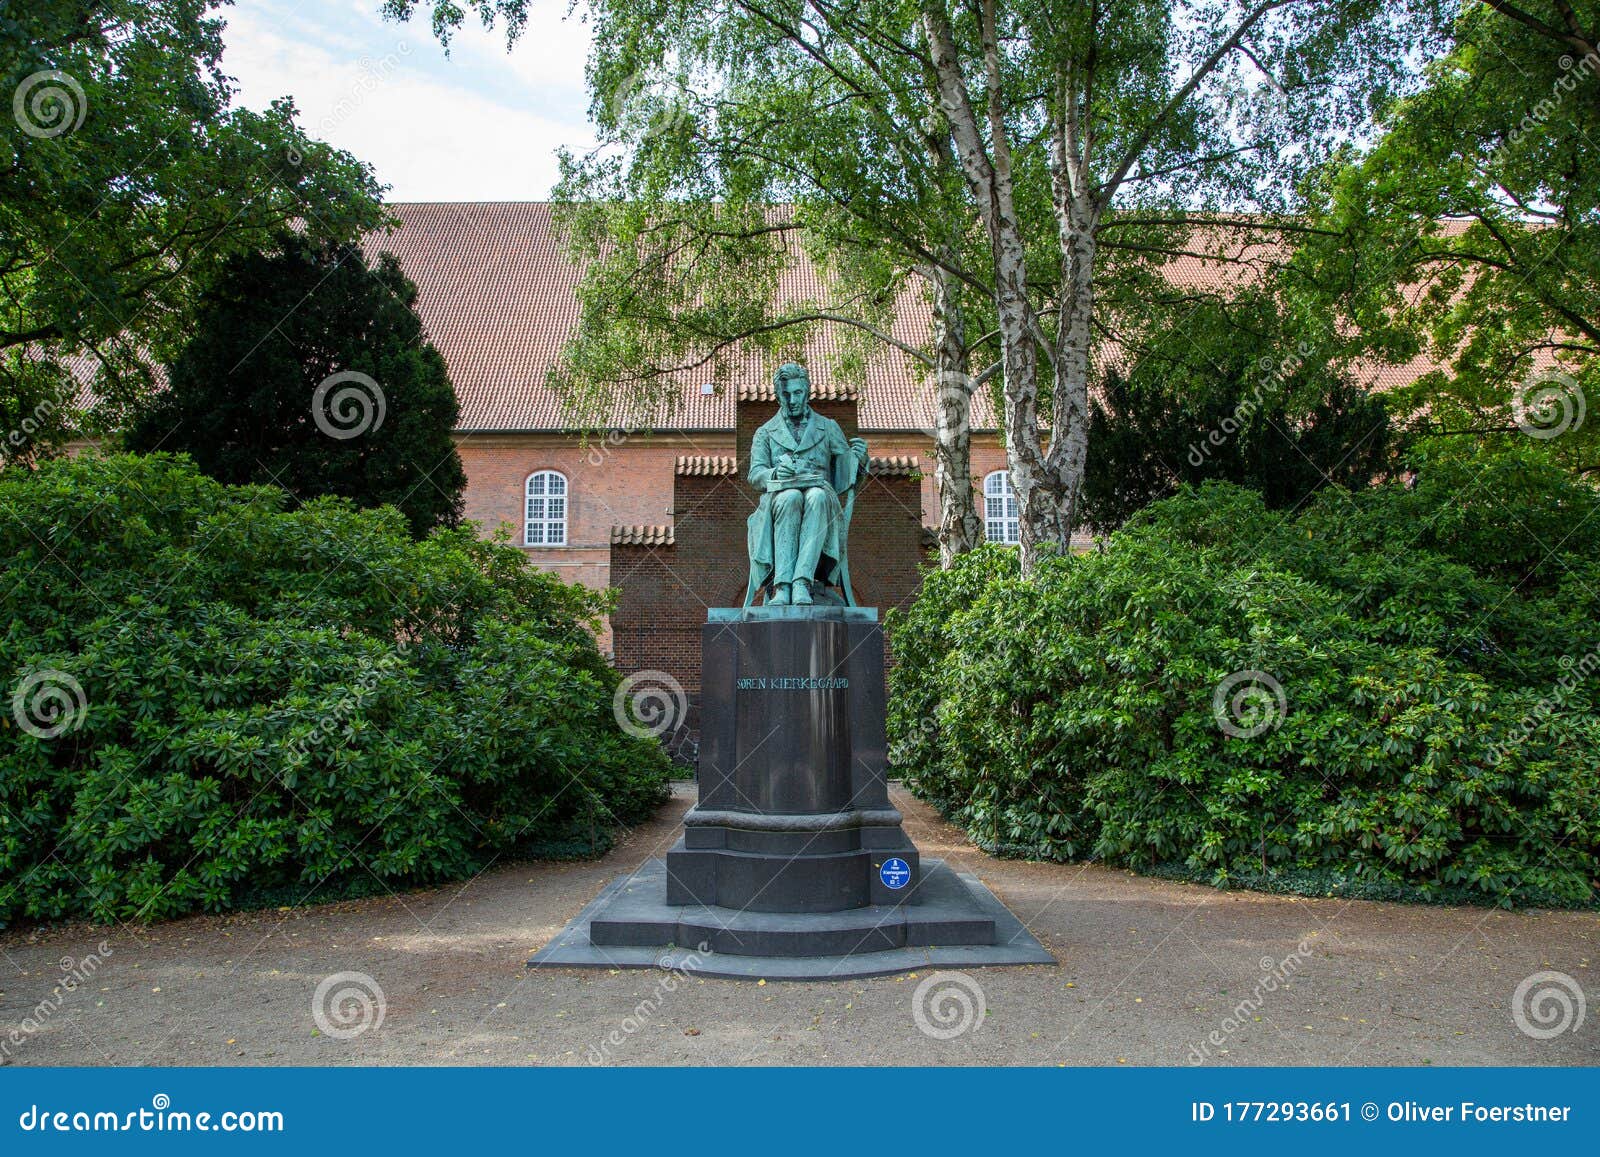 soren kierkegaard statue in copenhagen